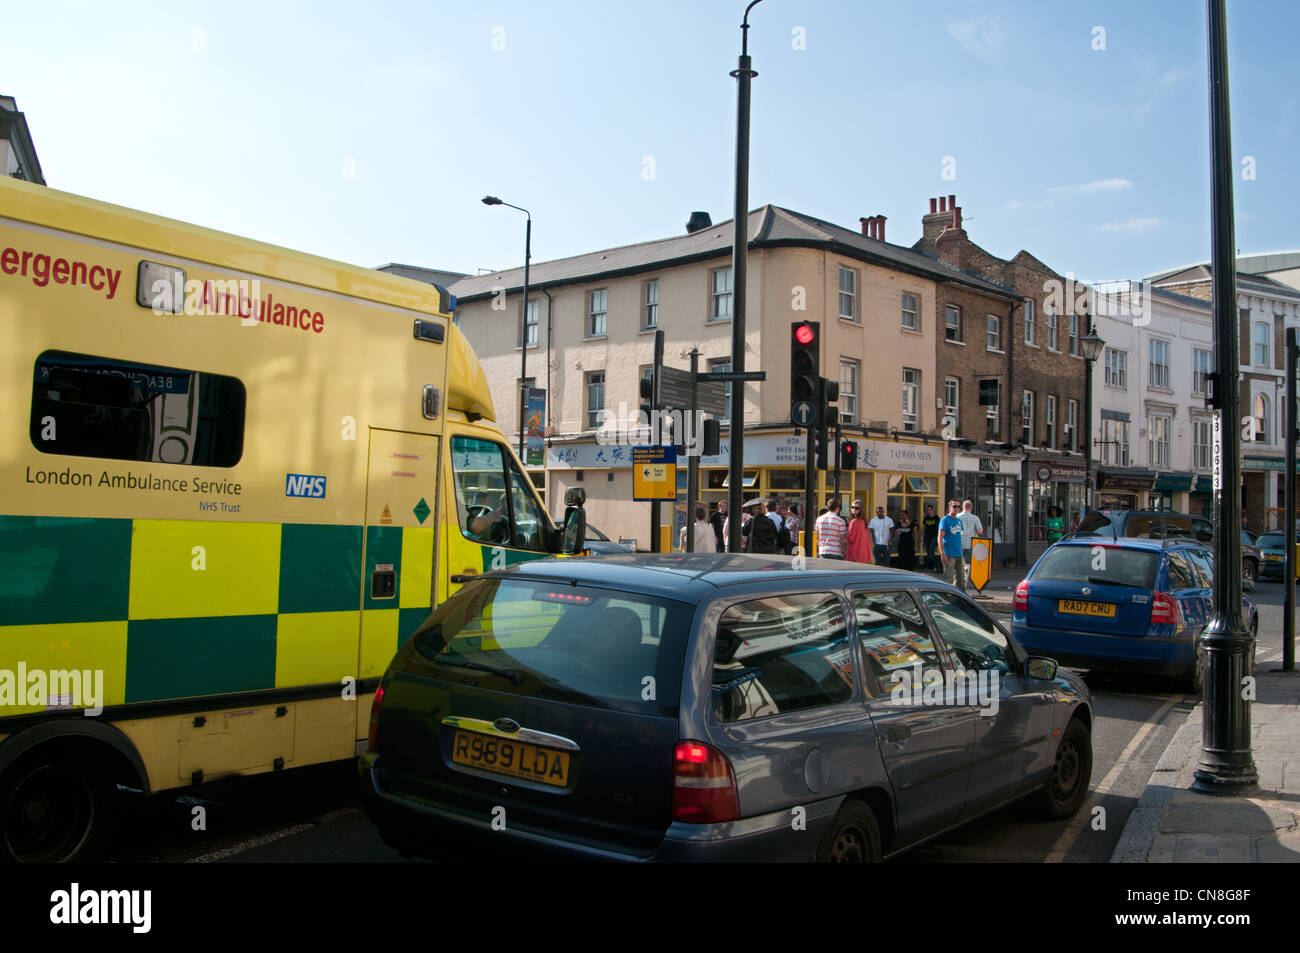 Emergency ambulance, Greenwich, London. UK Stock Photo